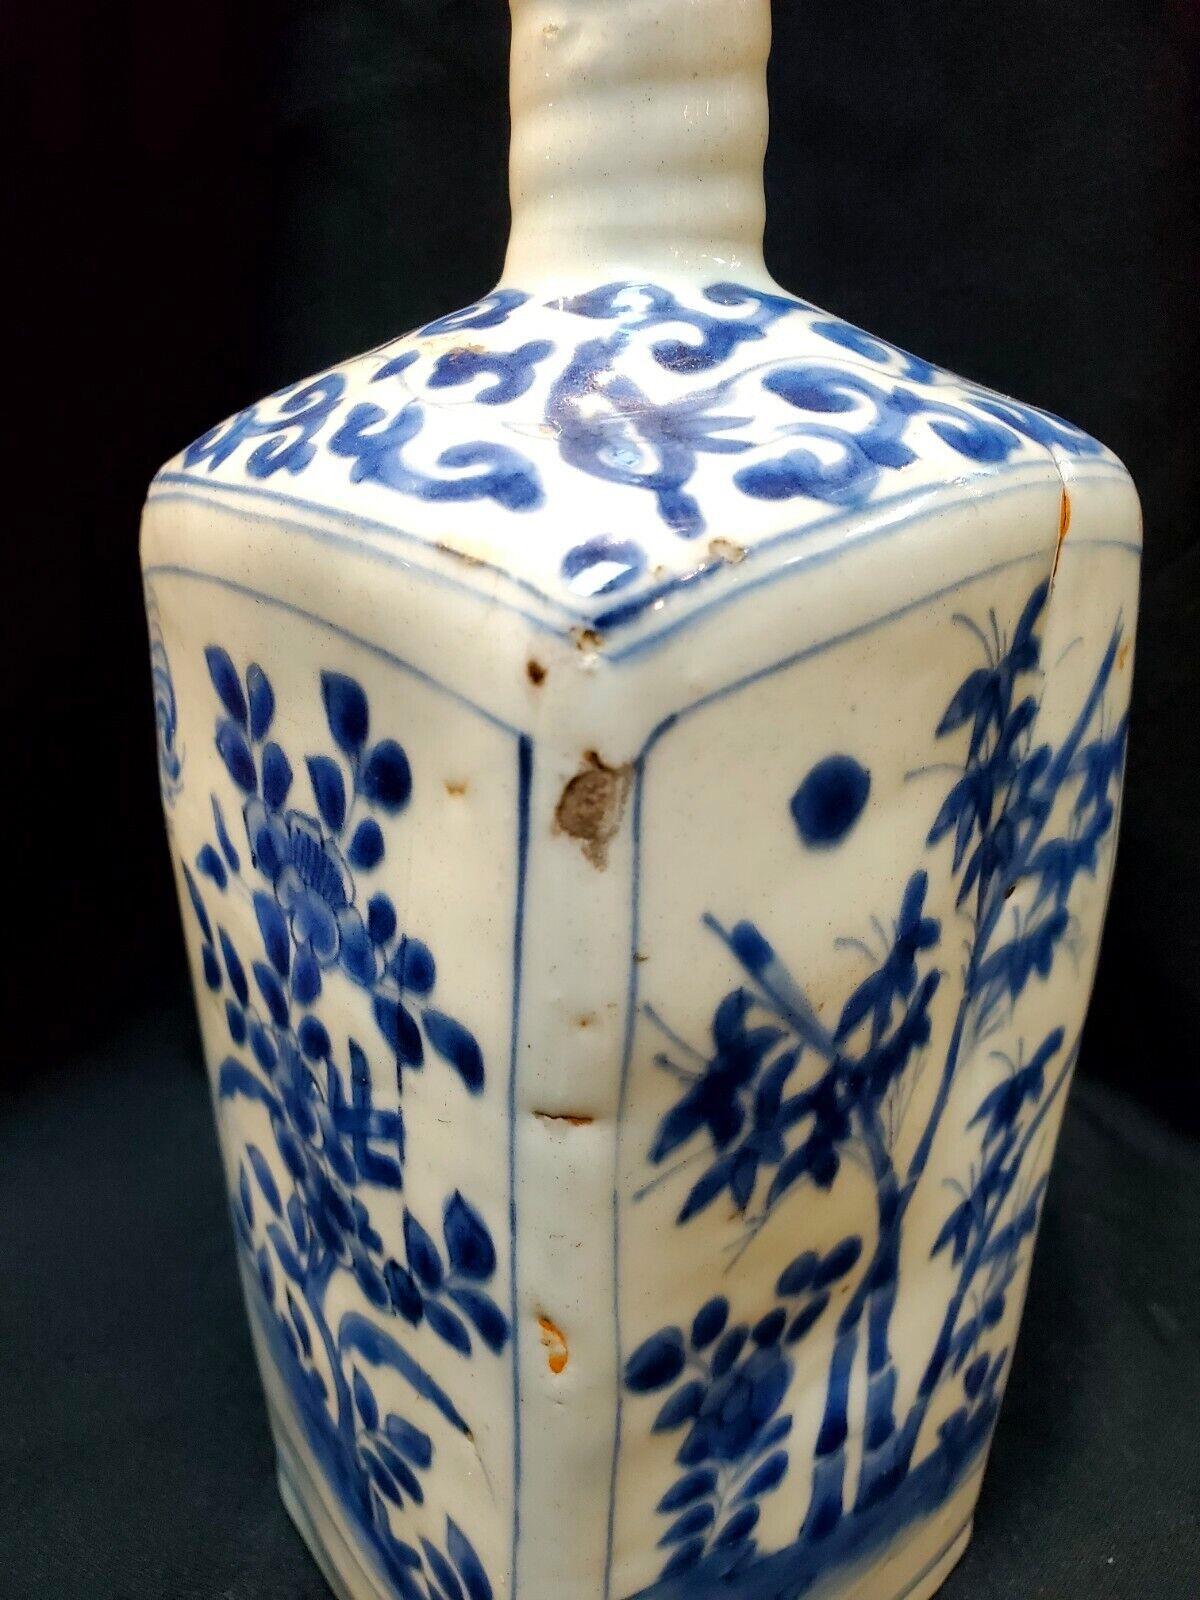 Ming, période JiaJing vase carré en porcelaine bleu et blanc avec quatre messieurs parmi des fleurs / ?, ??????????(? ?,? ??)
Dimensions de l'article : approximativement H:10inch, W:3.75 inch
MATERIAL : Porcelaine bleue et blanche 
Condit : La